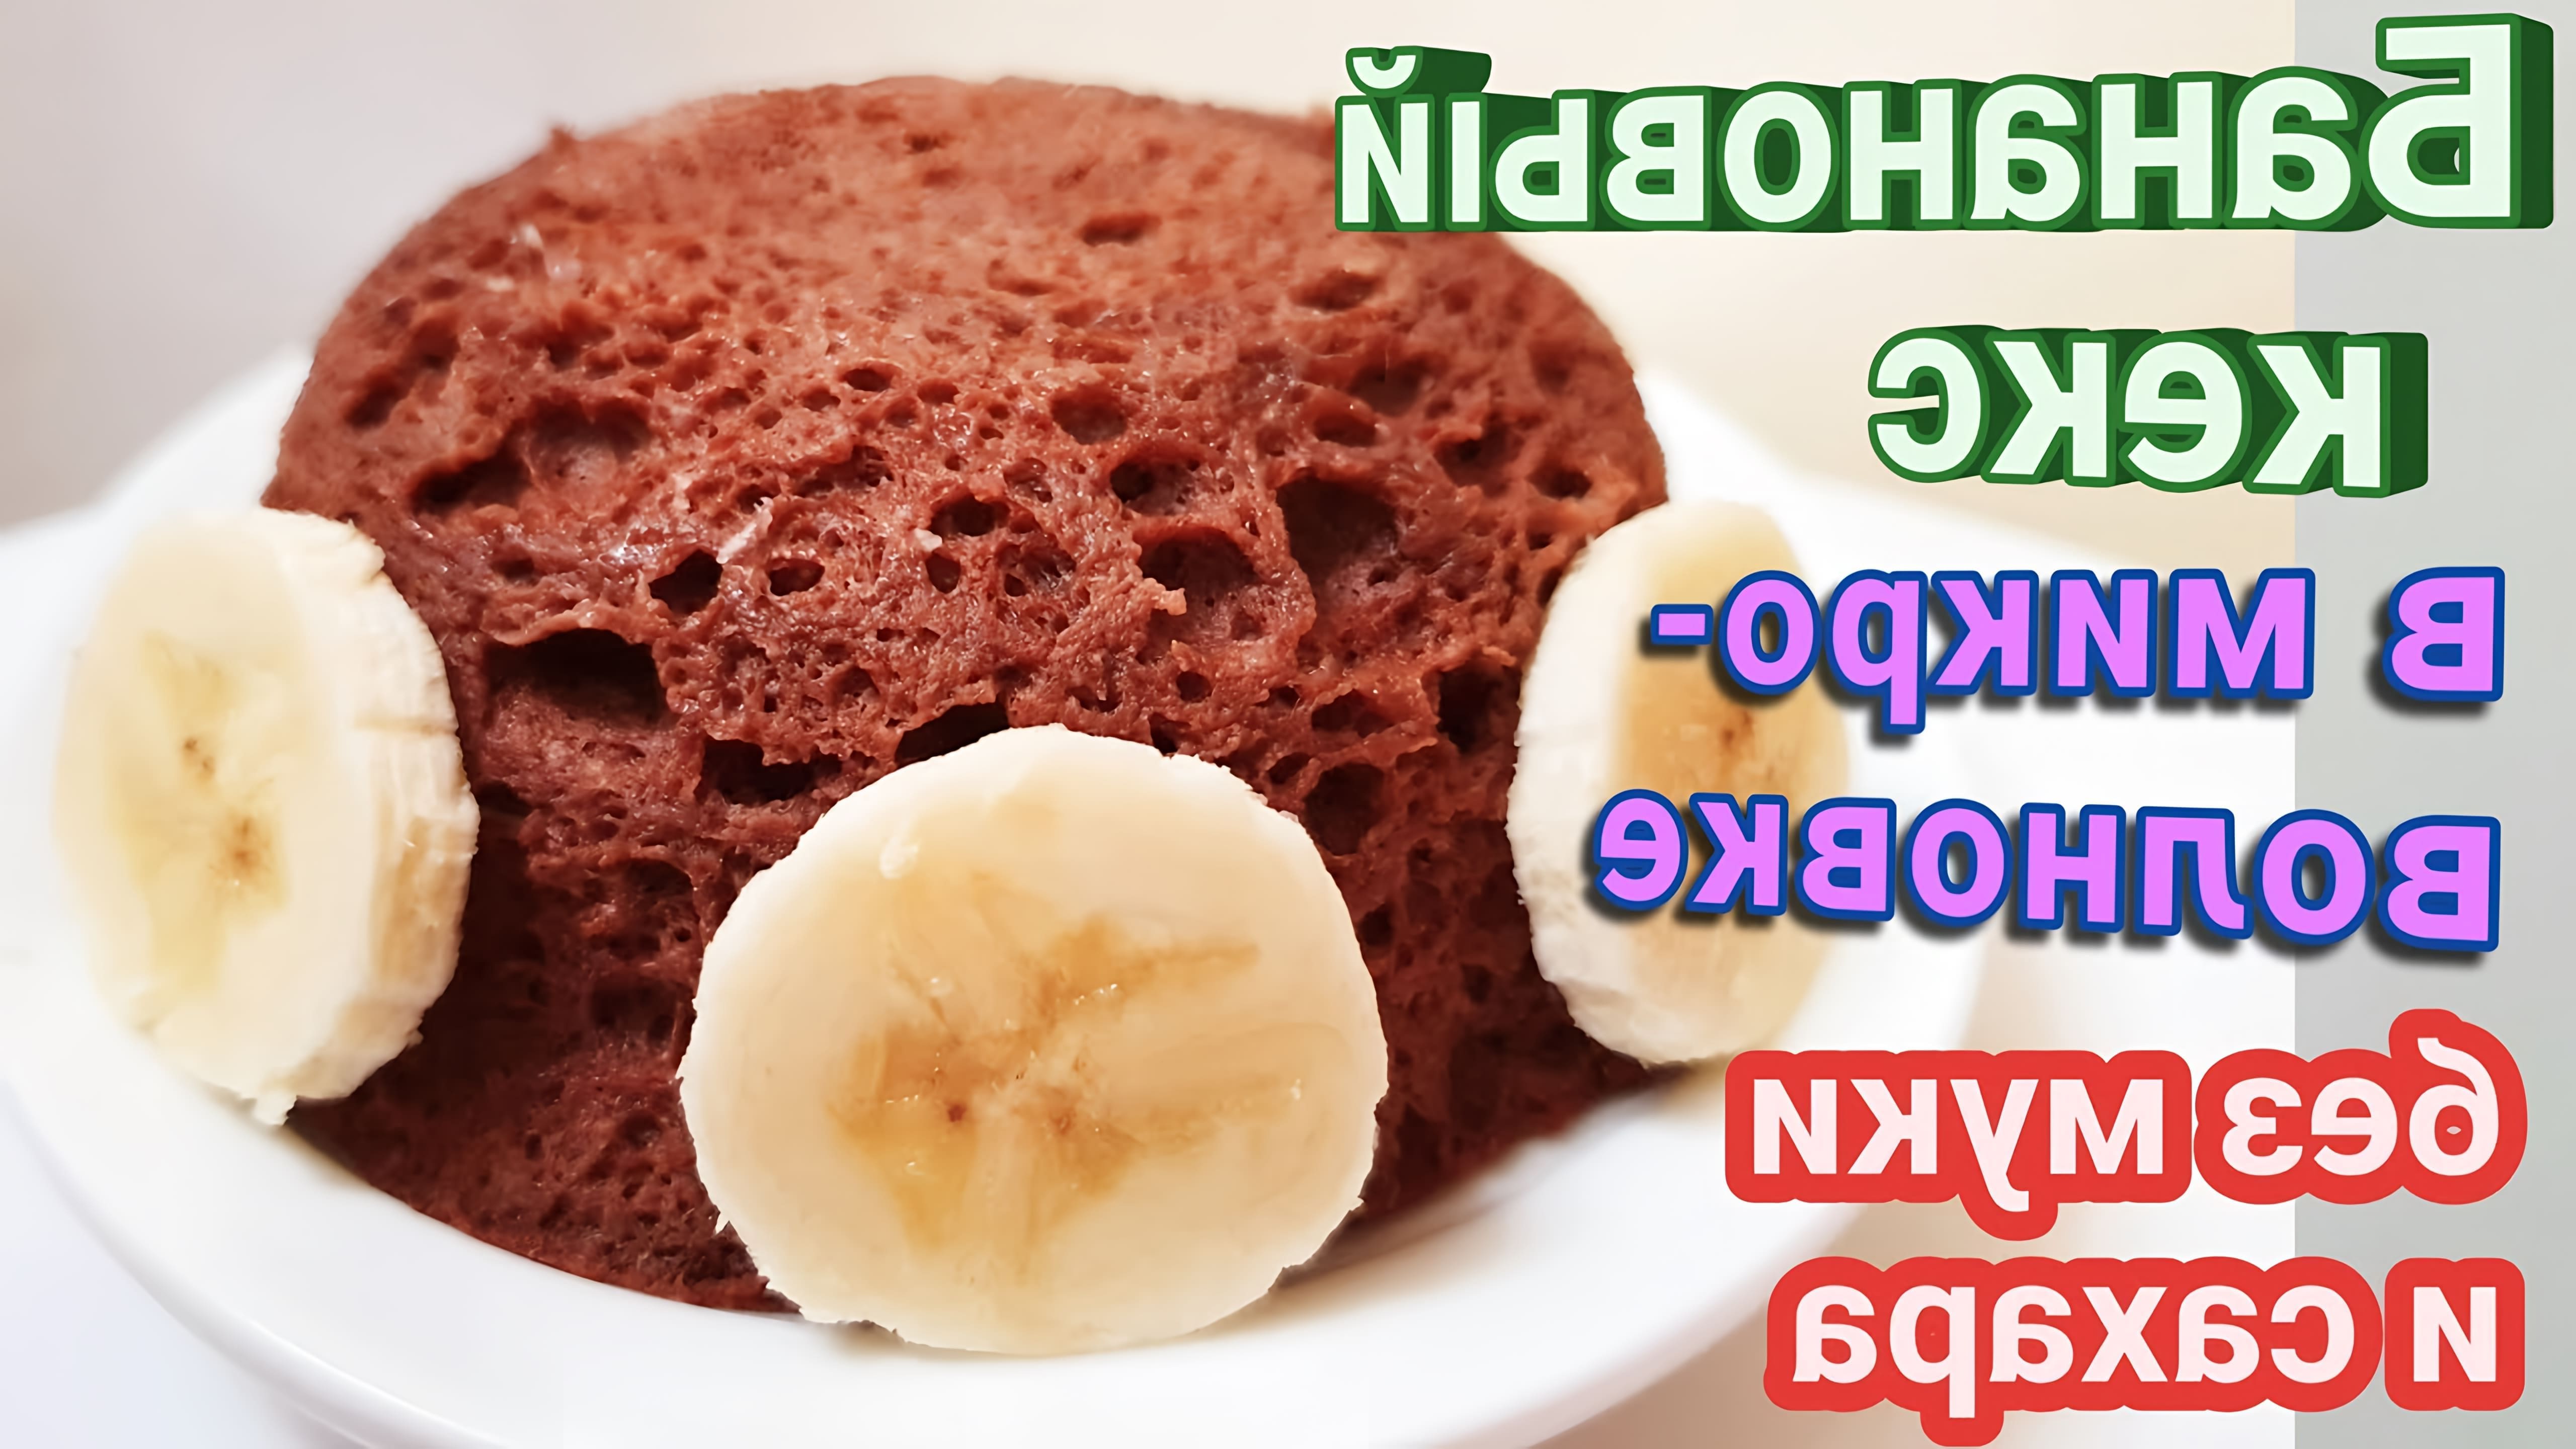 В этом видео демонстрируется рецепт бананового кекса, который готовится в микроволновке без использования муки и сахара